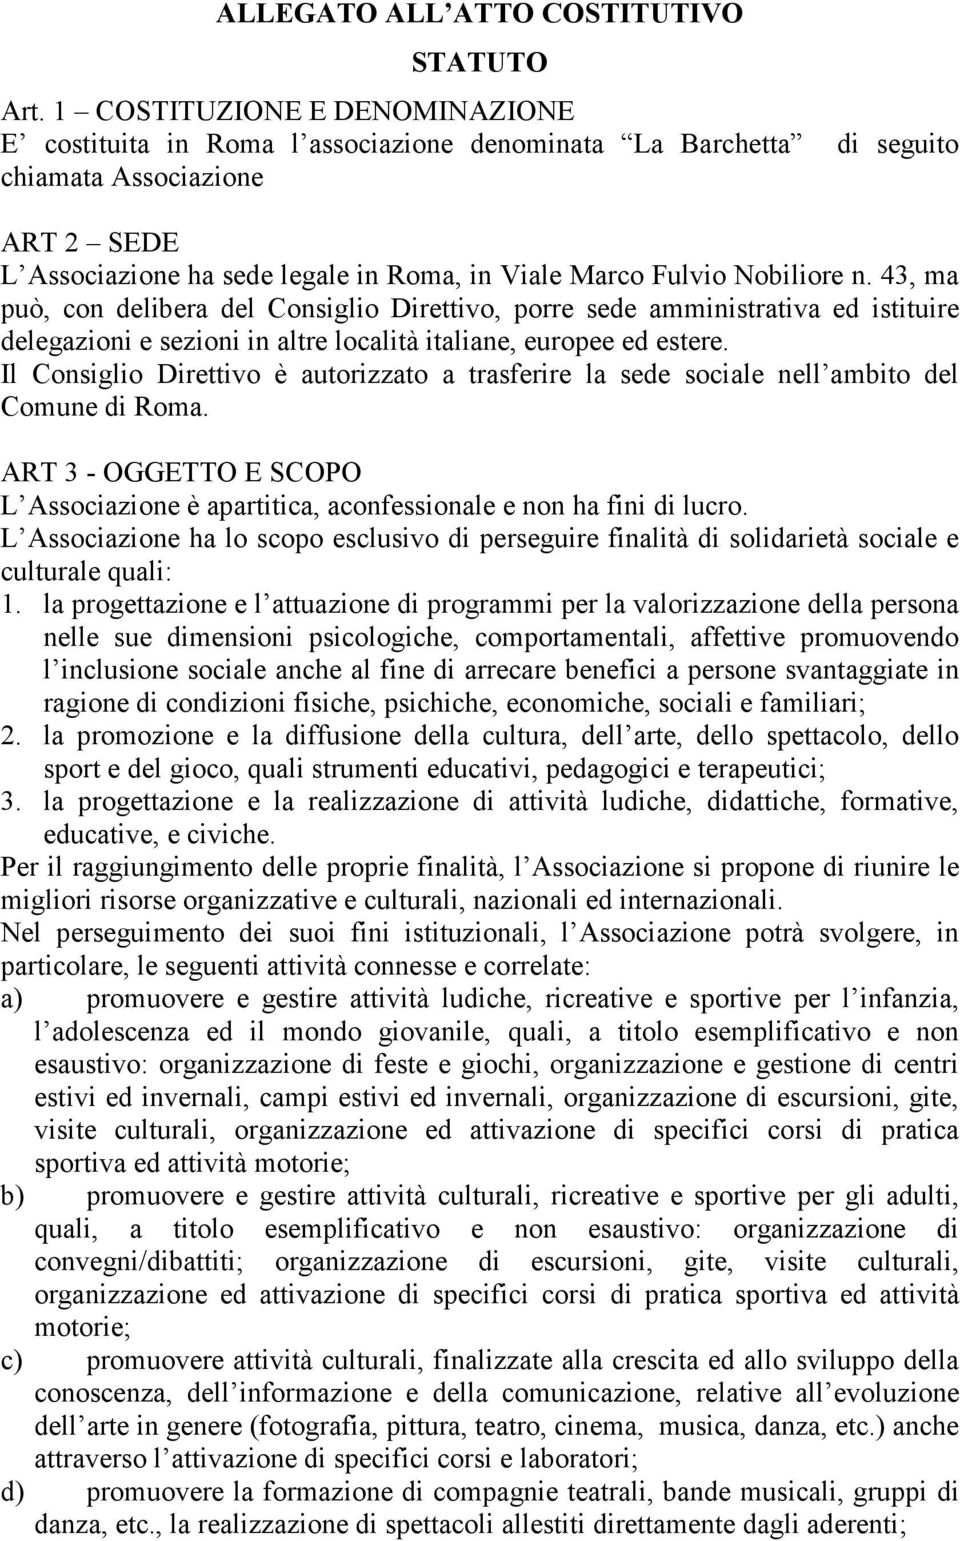 Nobiliore n. 43, ma può, con delibera del Consiglio Direttivo, porre sede amministrativa ed istituire delegazioni e sezioni in altre località italiane, europee ed estere.